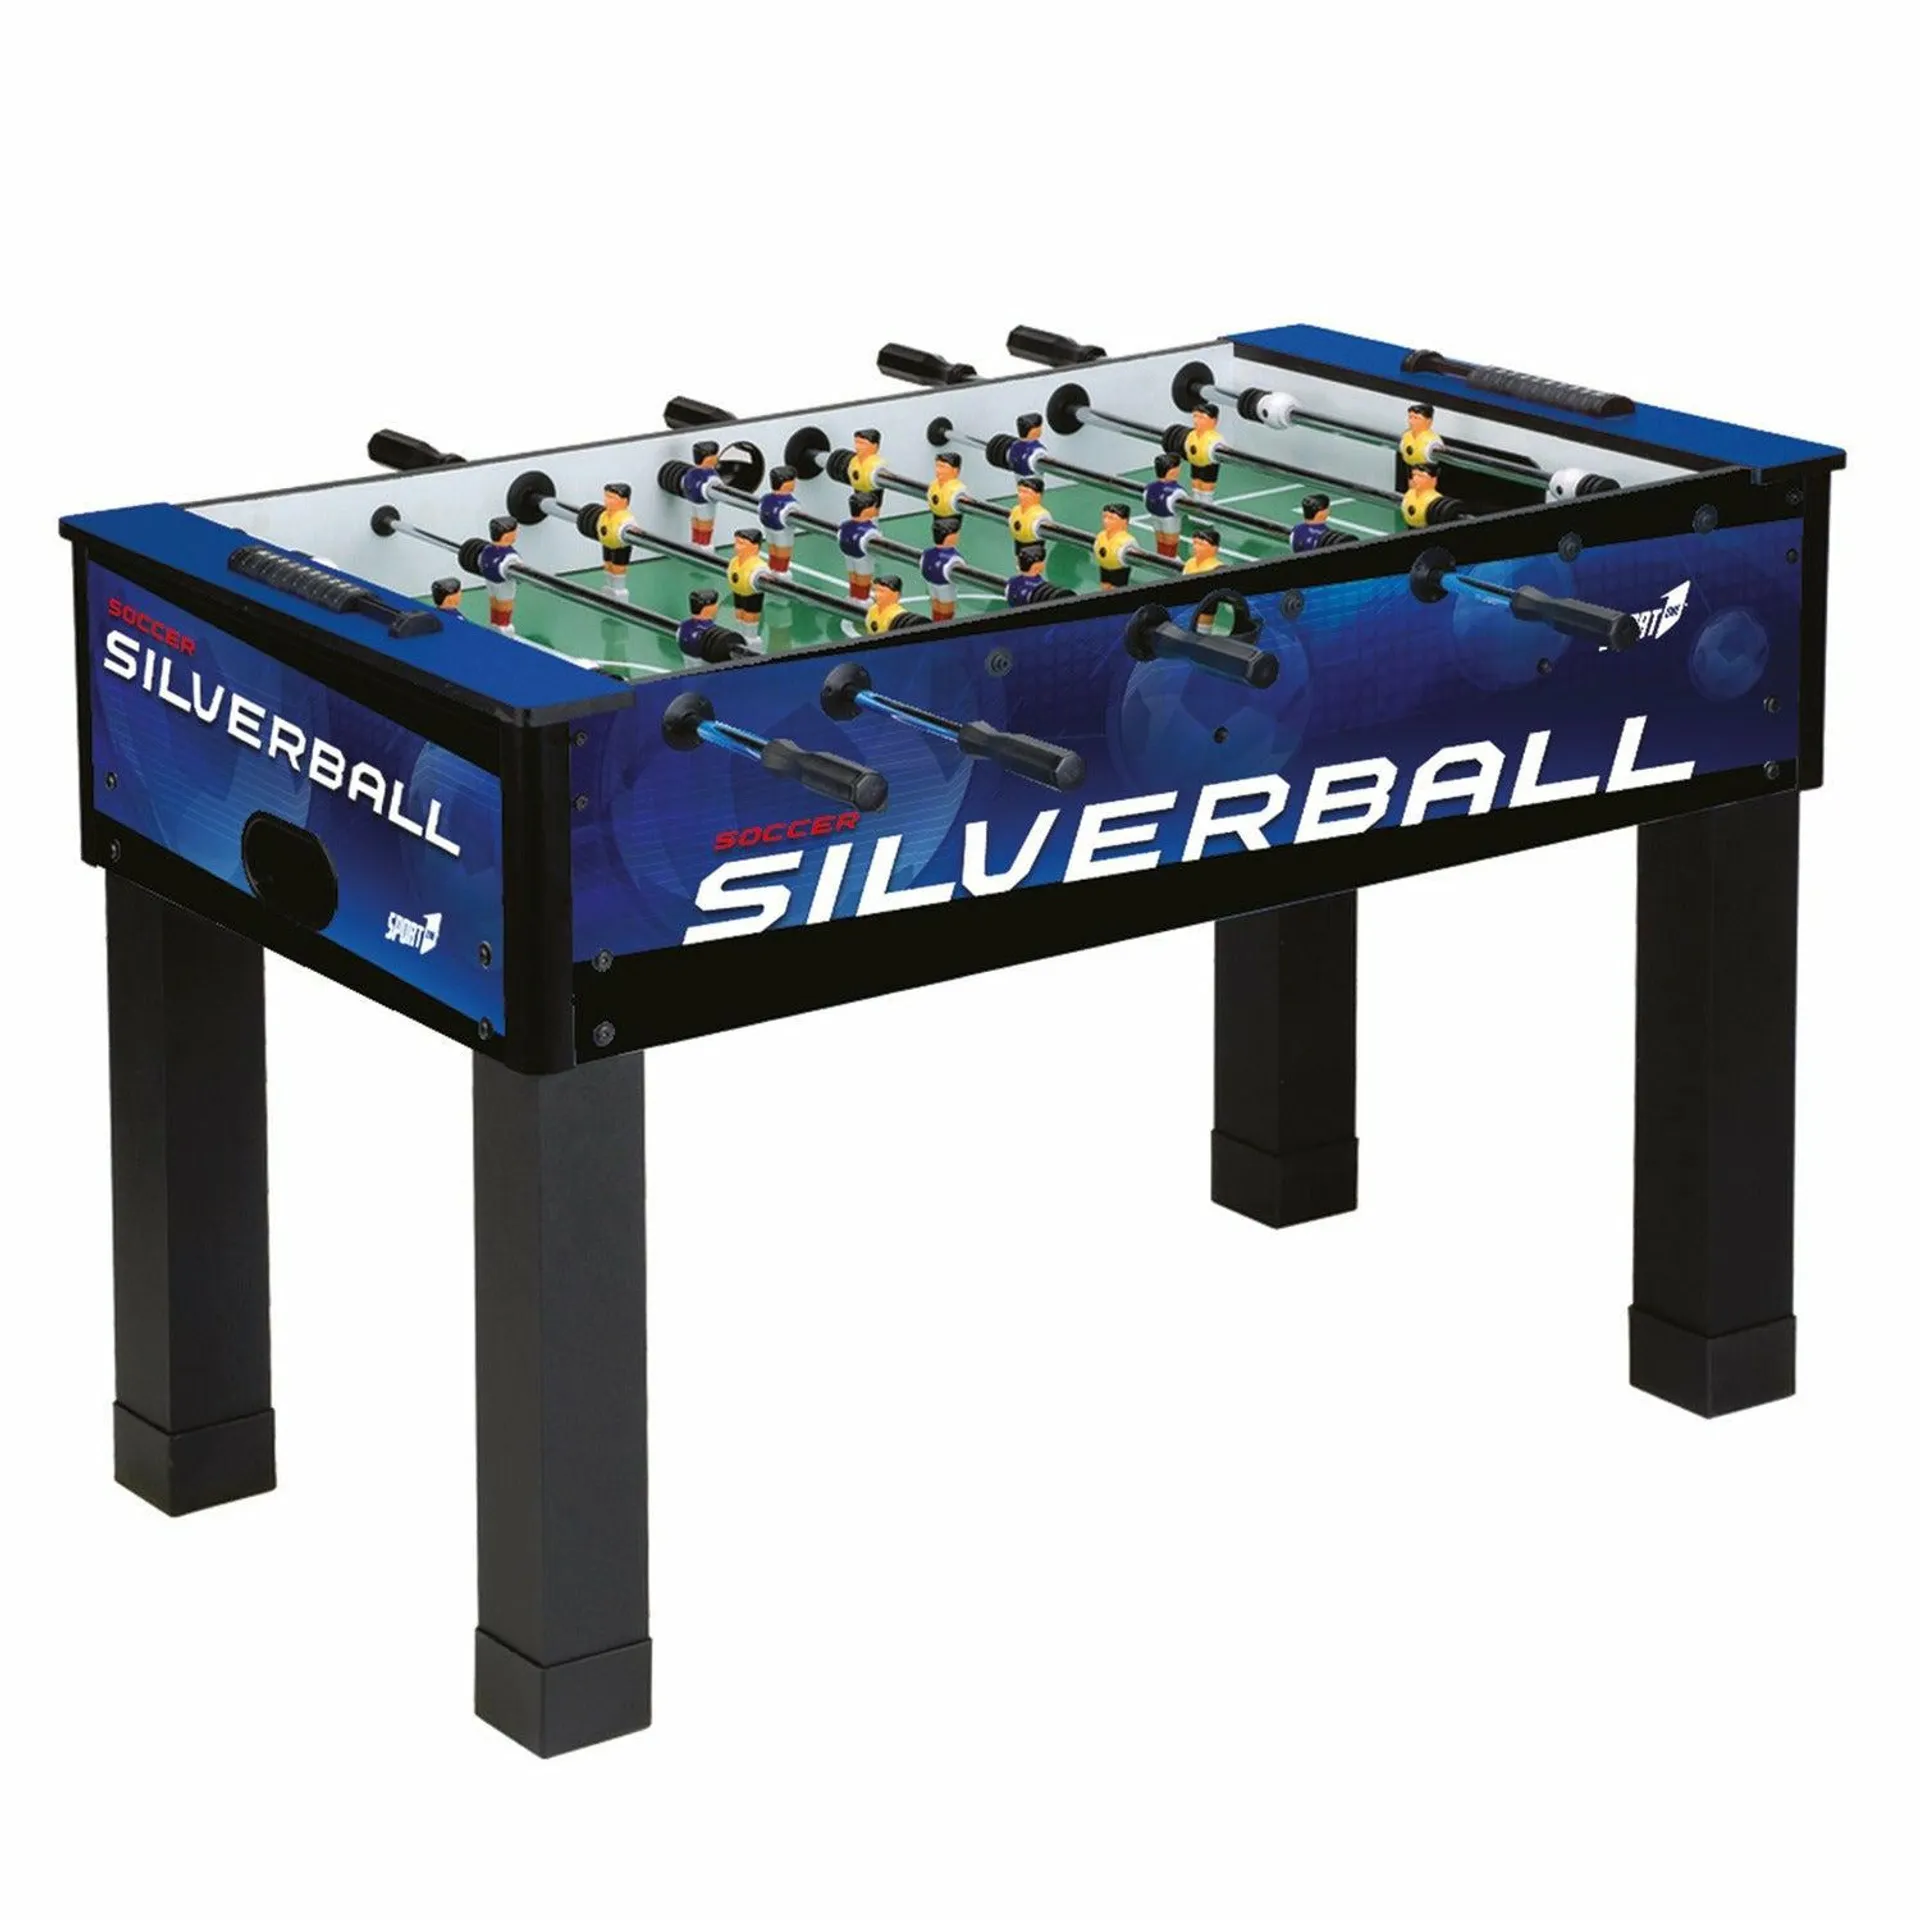 Calciobalilla Silverball 132x72 cm